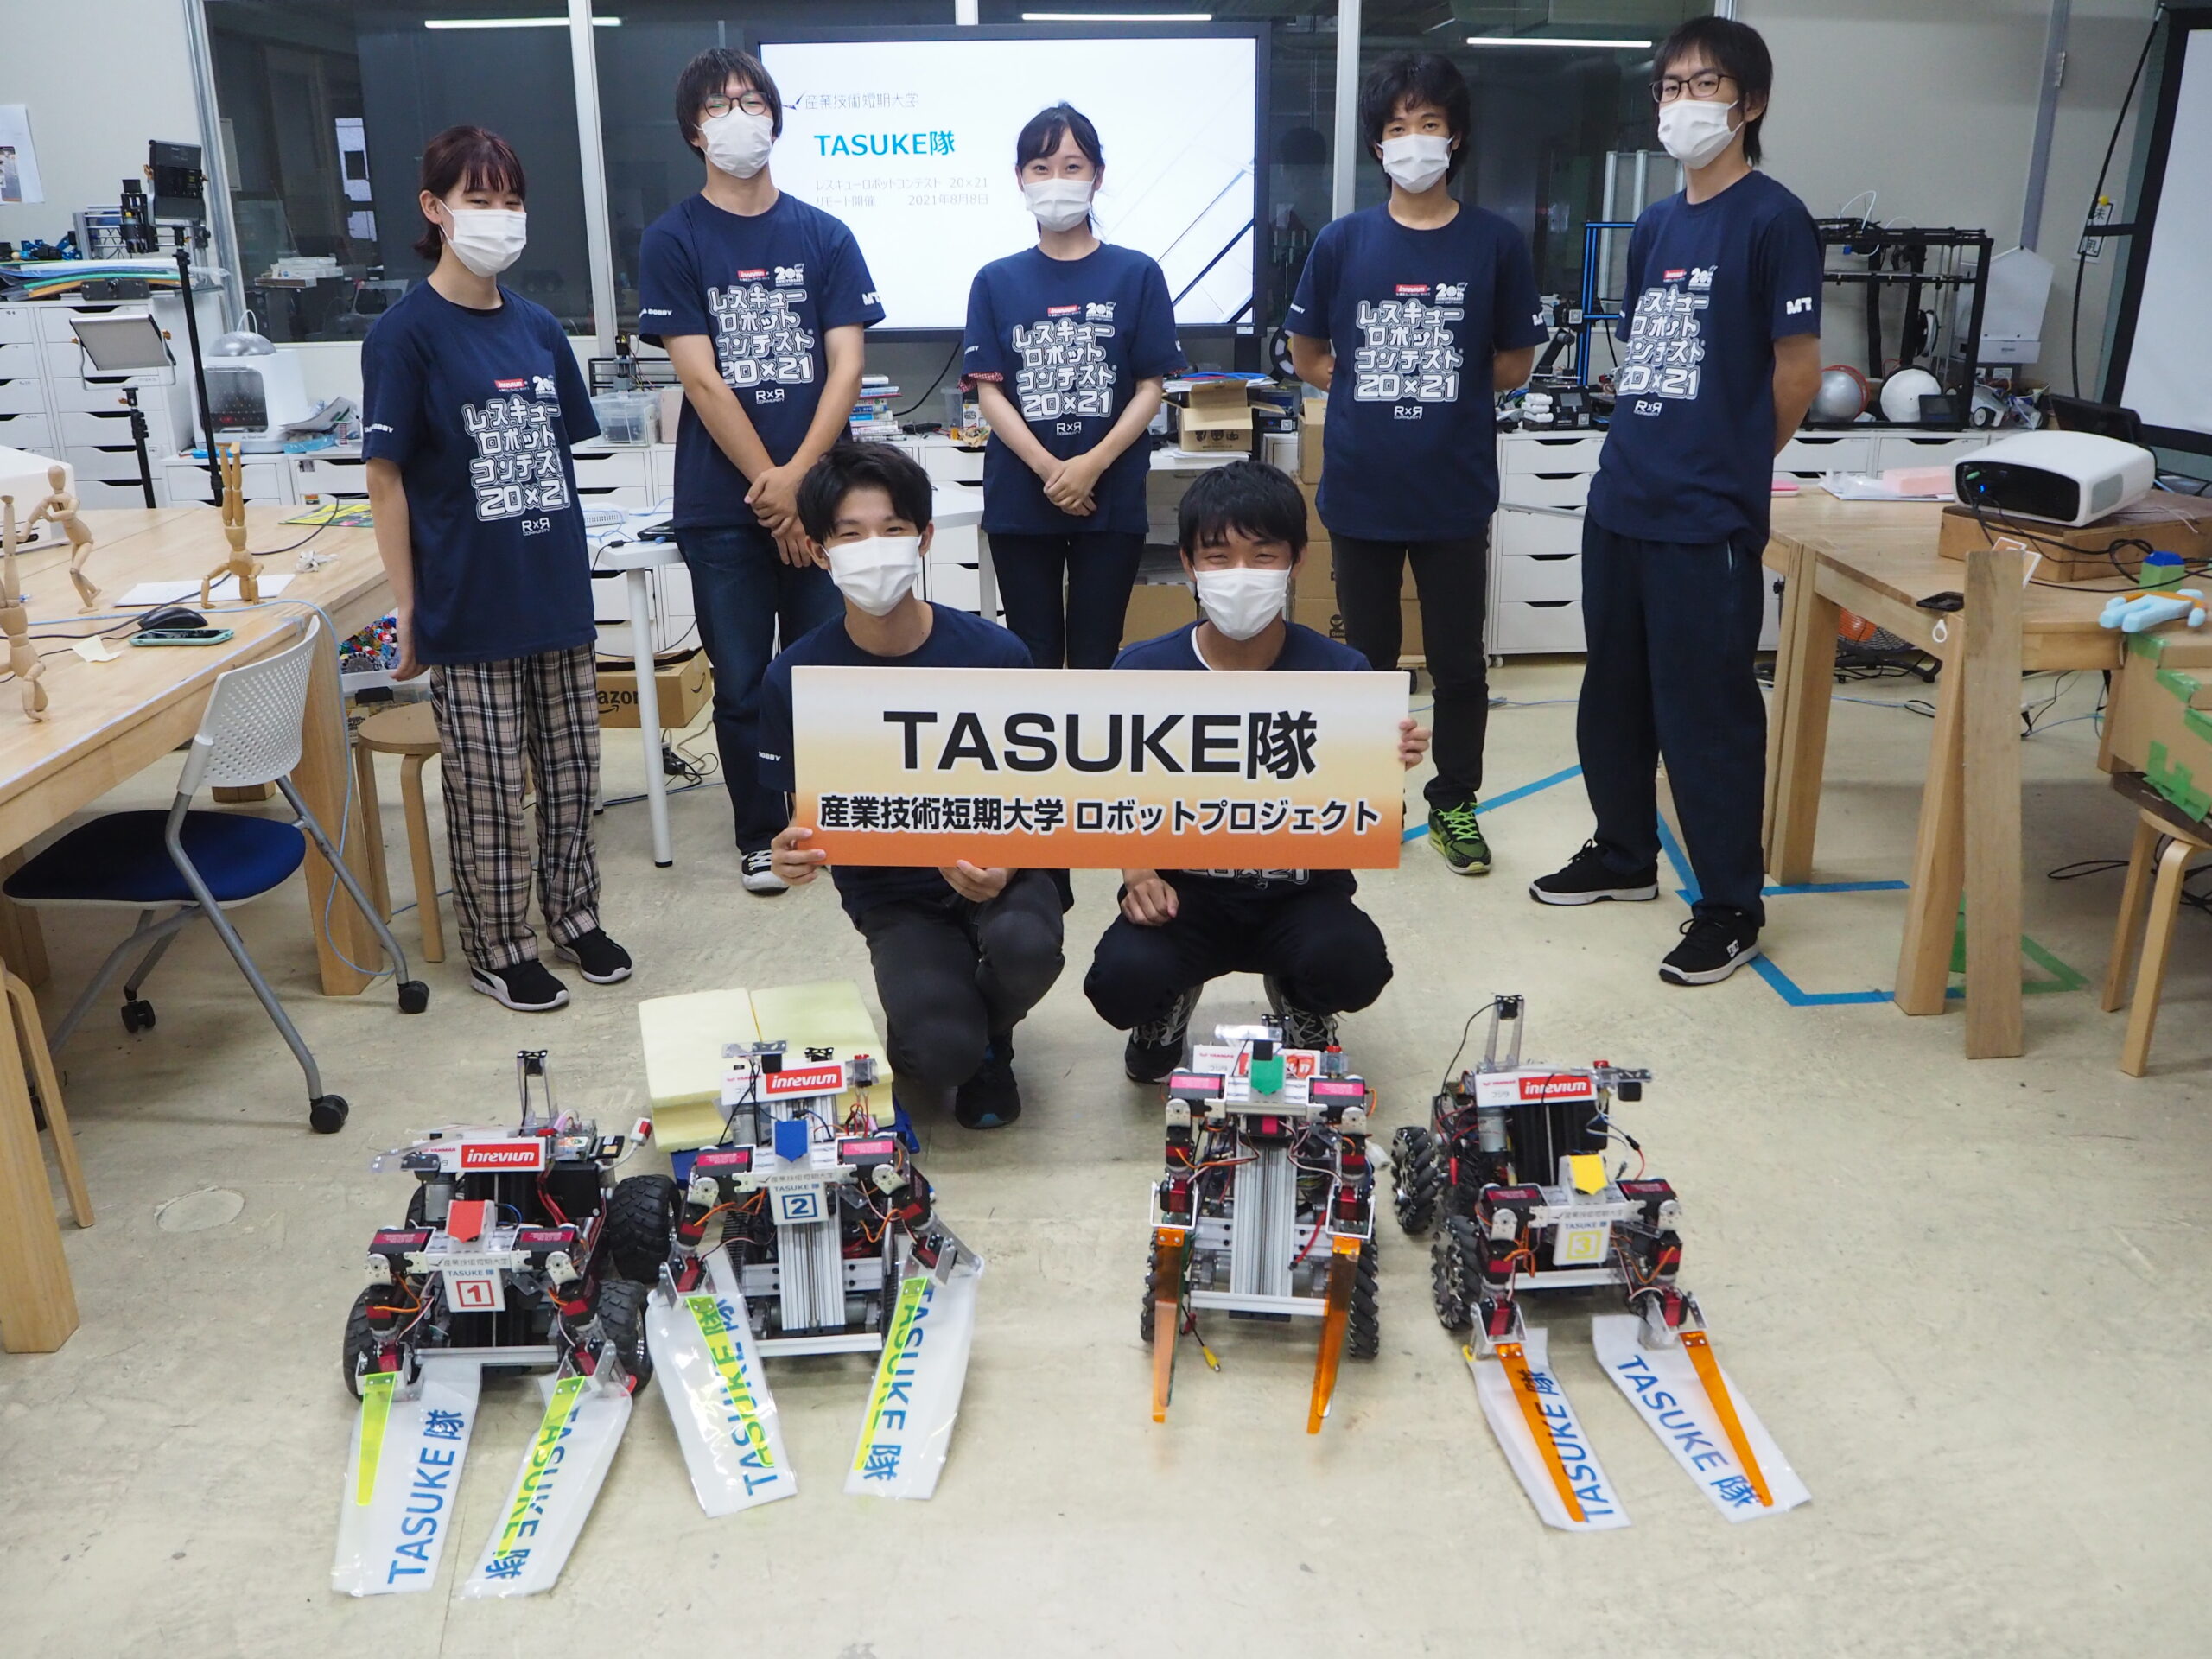 レスキューロボットコンテスト20×21に参加し「レスキュー工学アイデア賞」を受賞しました！